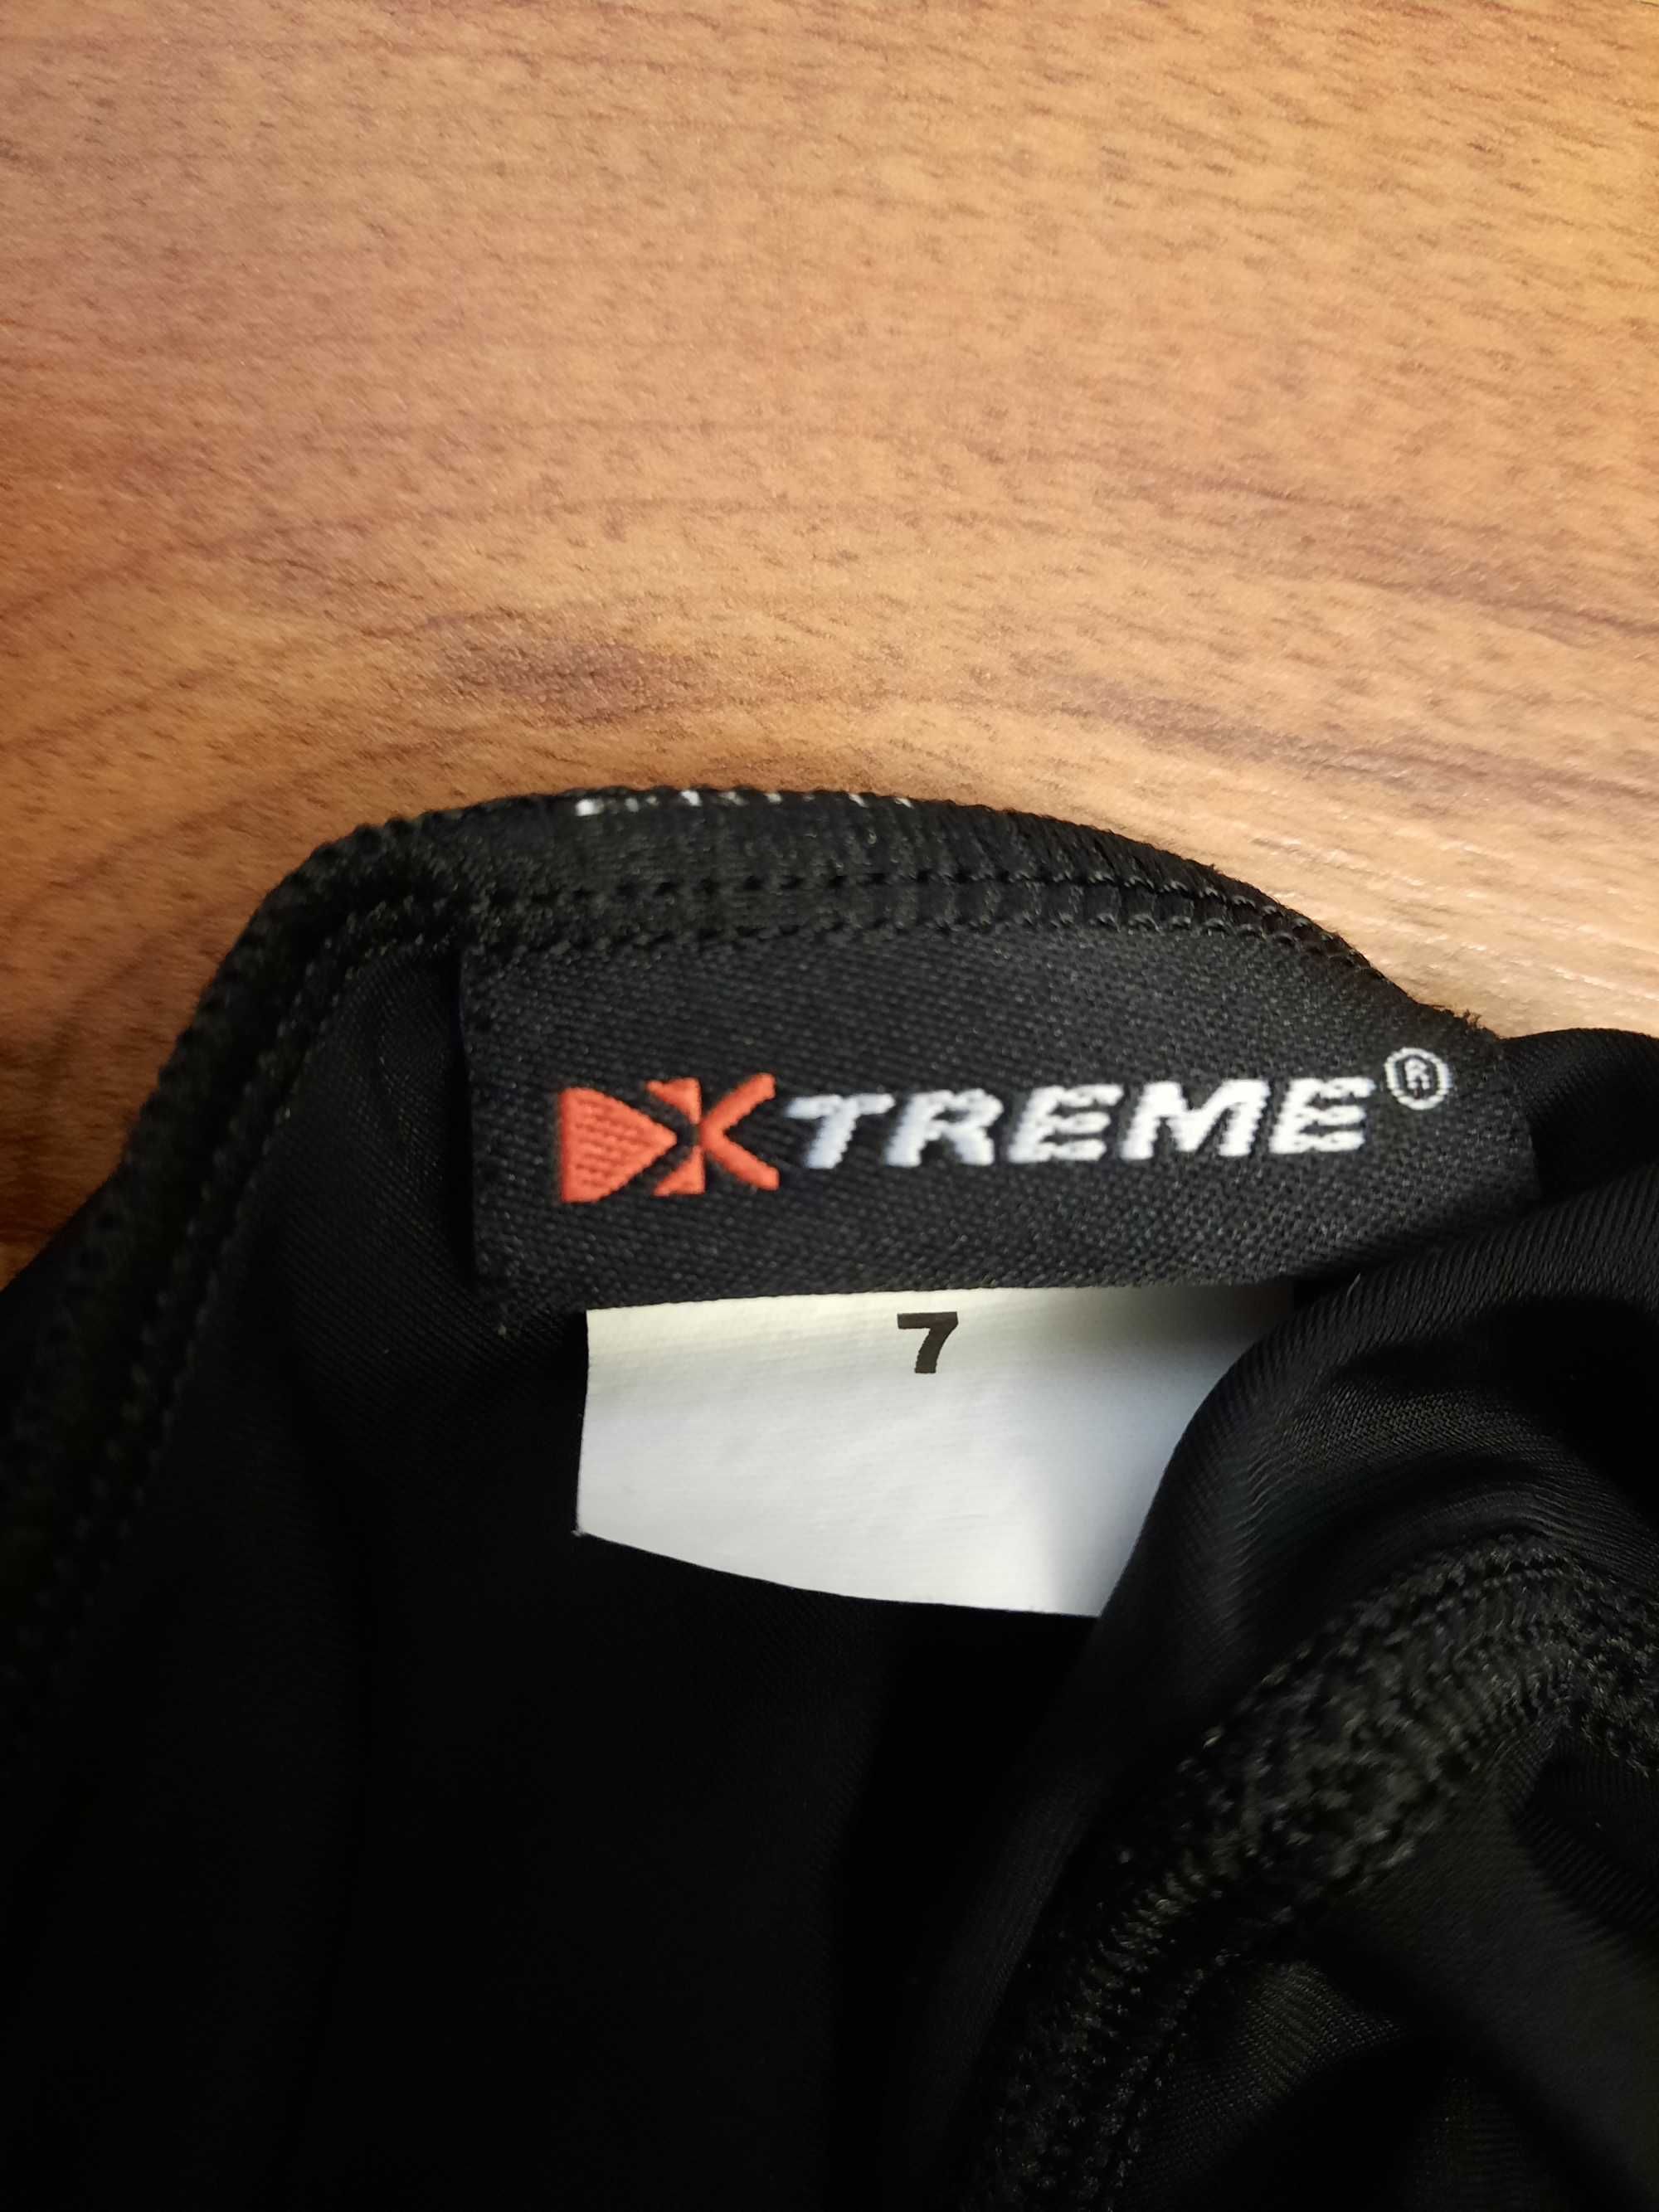 Czarne spodenki rowerowe szorty kolarskie z wkładką Xtreme 7 orien S M